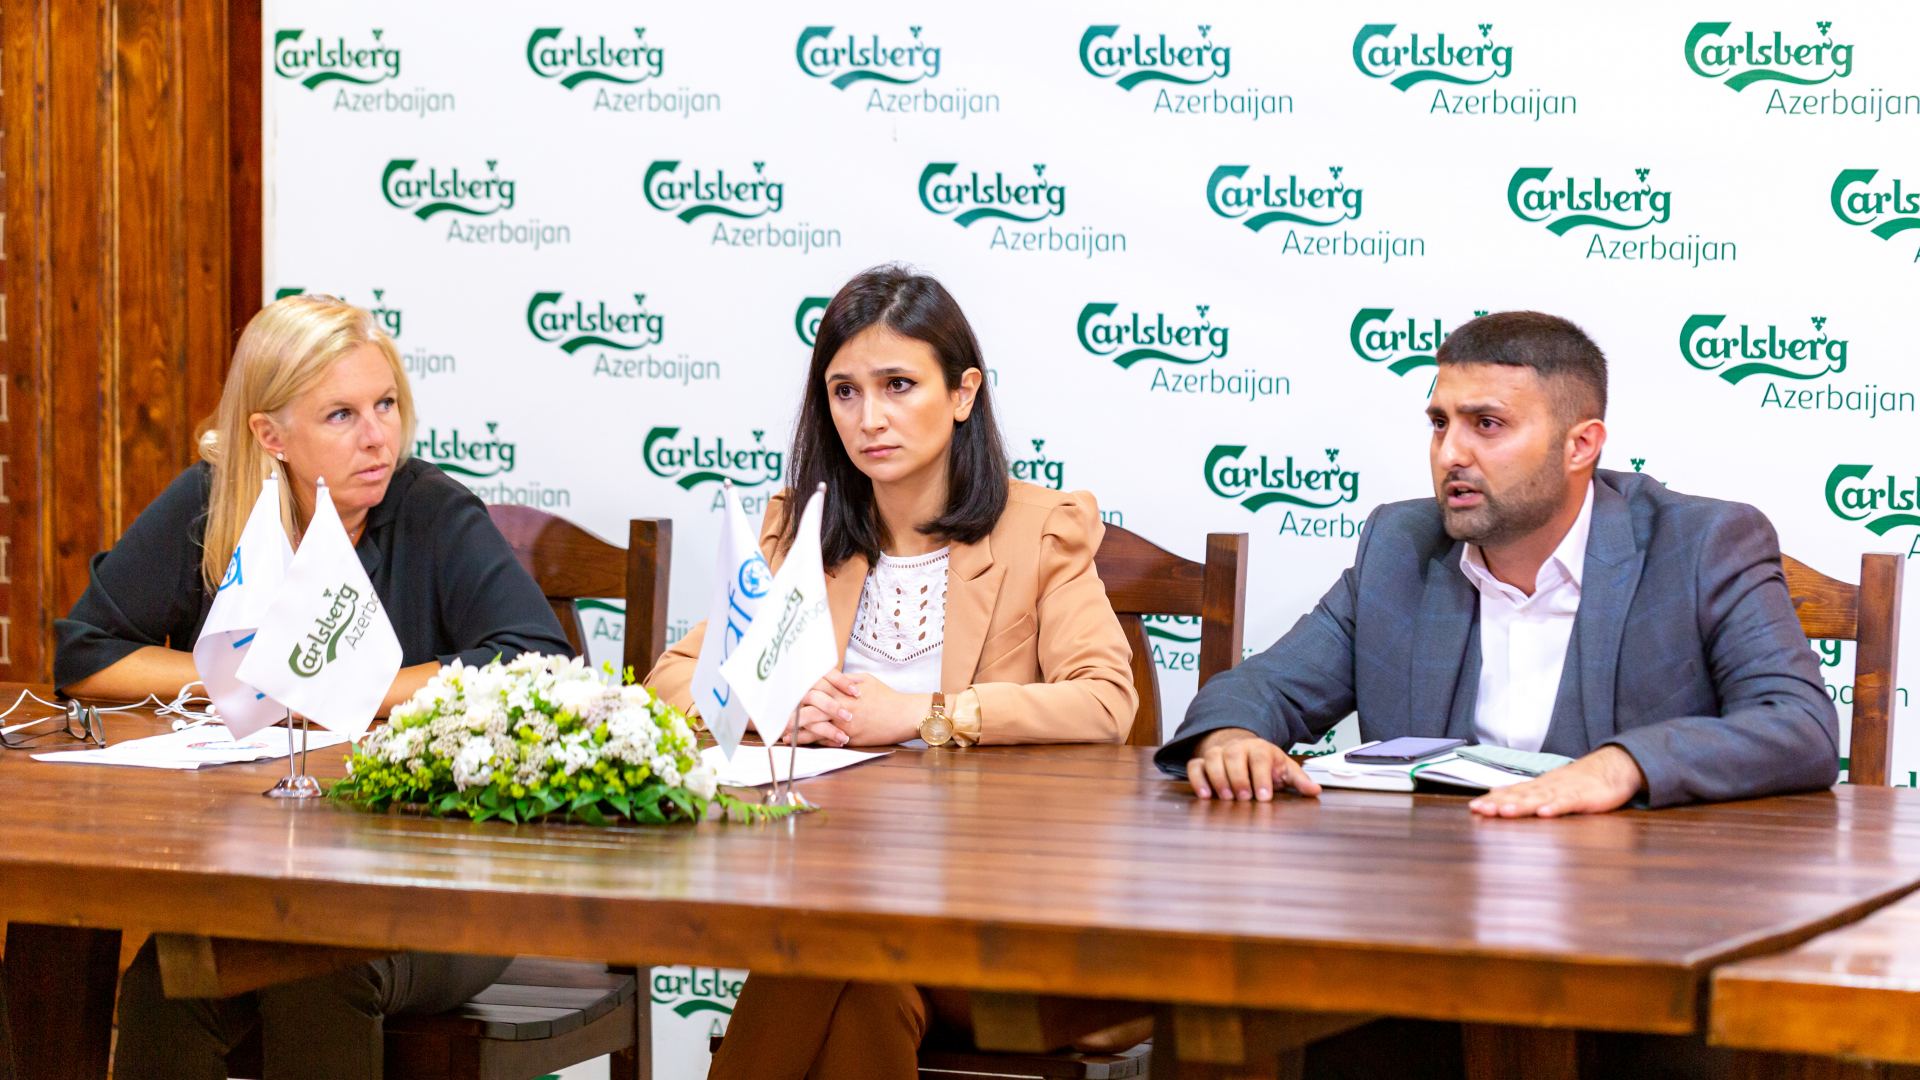 Carlsberg Azerbaijan və UAFA “toksik trio”nun gənclərə təsirini araşdırmaq üçün sosial tədqiqat aparmışlar (FOTO) - Gallery Image